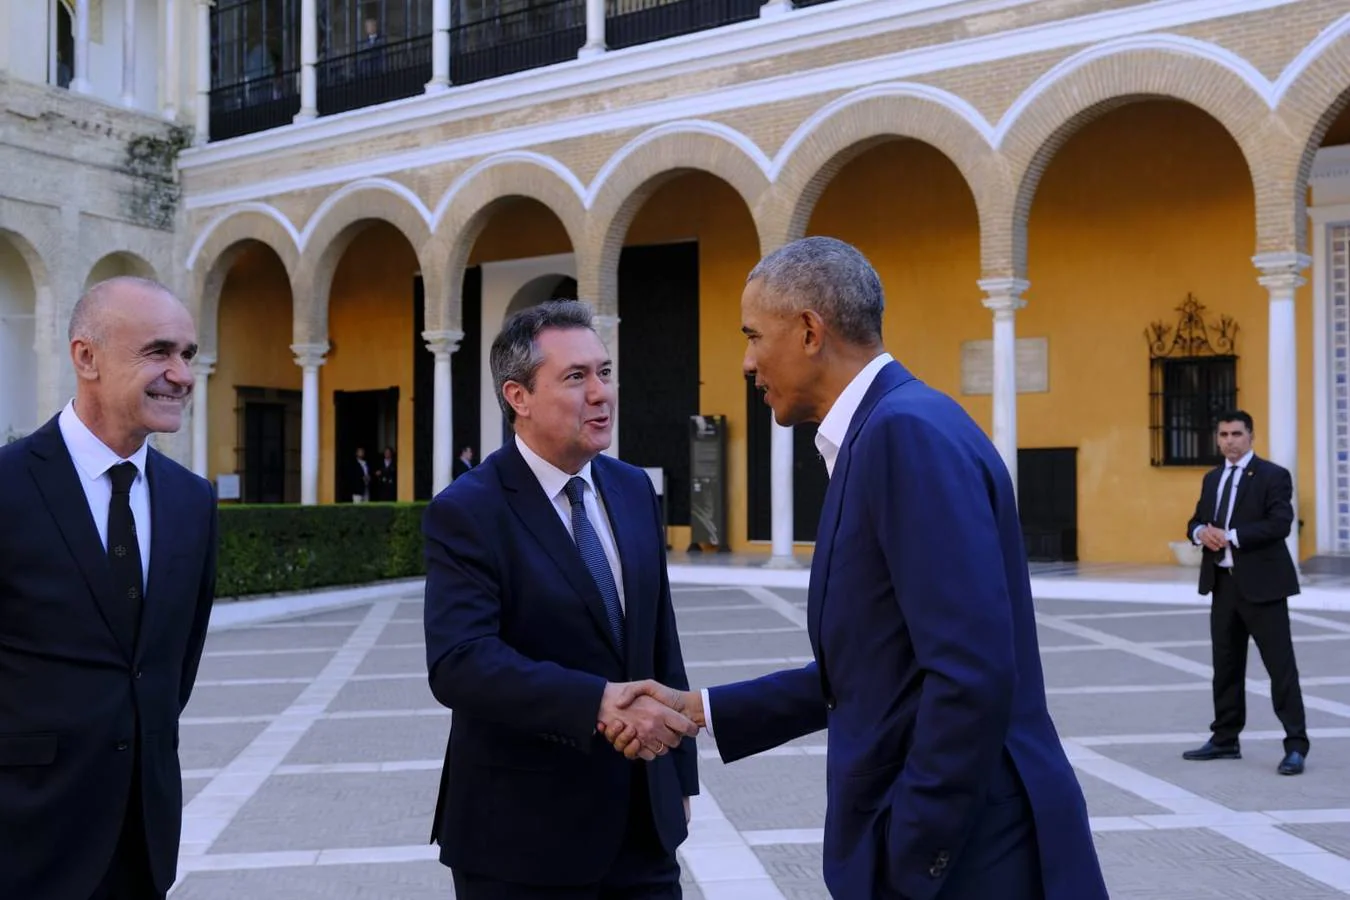 Los detalles de la visita de Barack Obama a Sevilla: de tapas por el Centro y visita al Real Alcázar